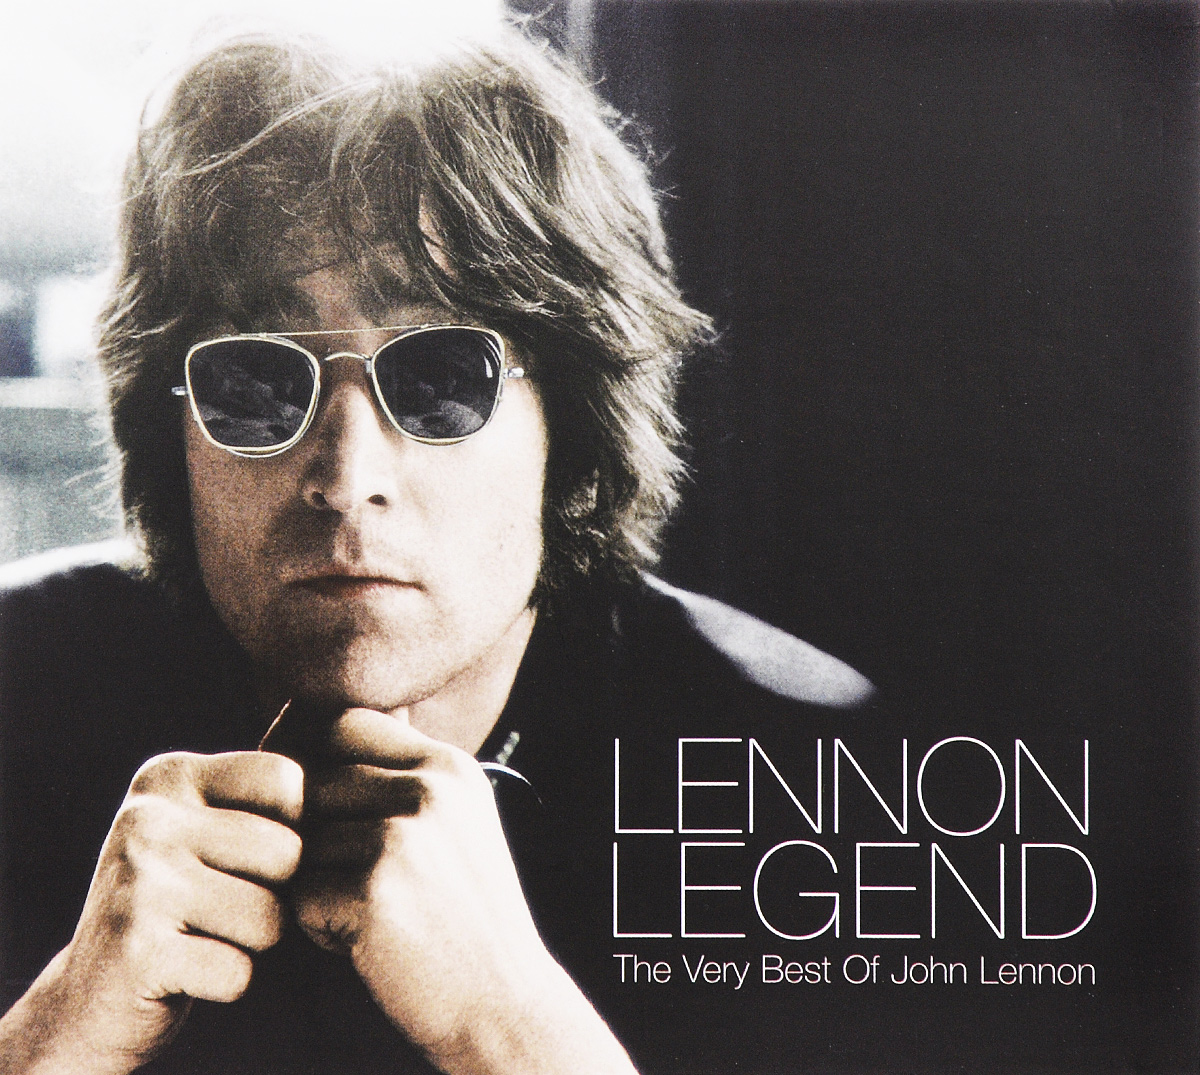 Lennon Legend. The Very Best Of John Lennon